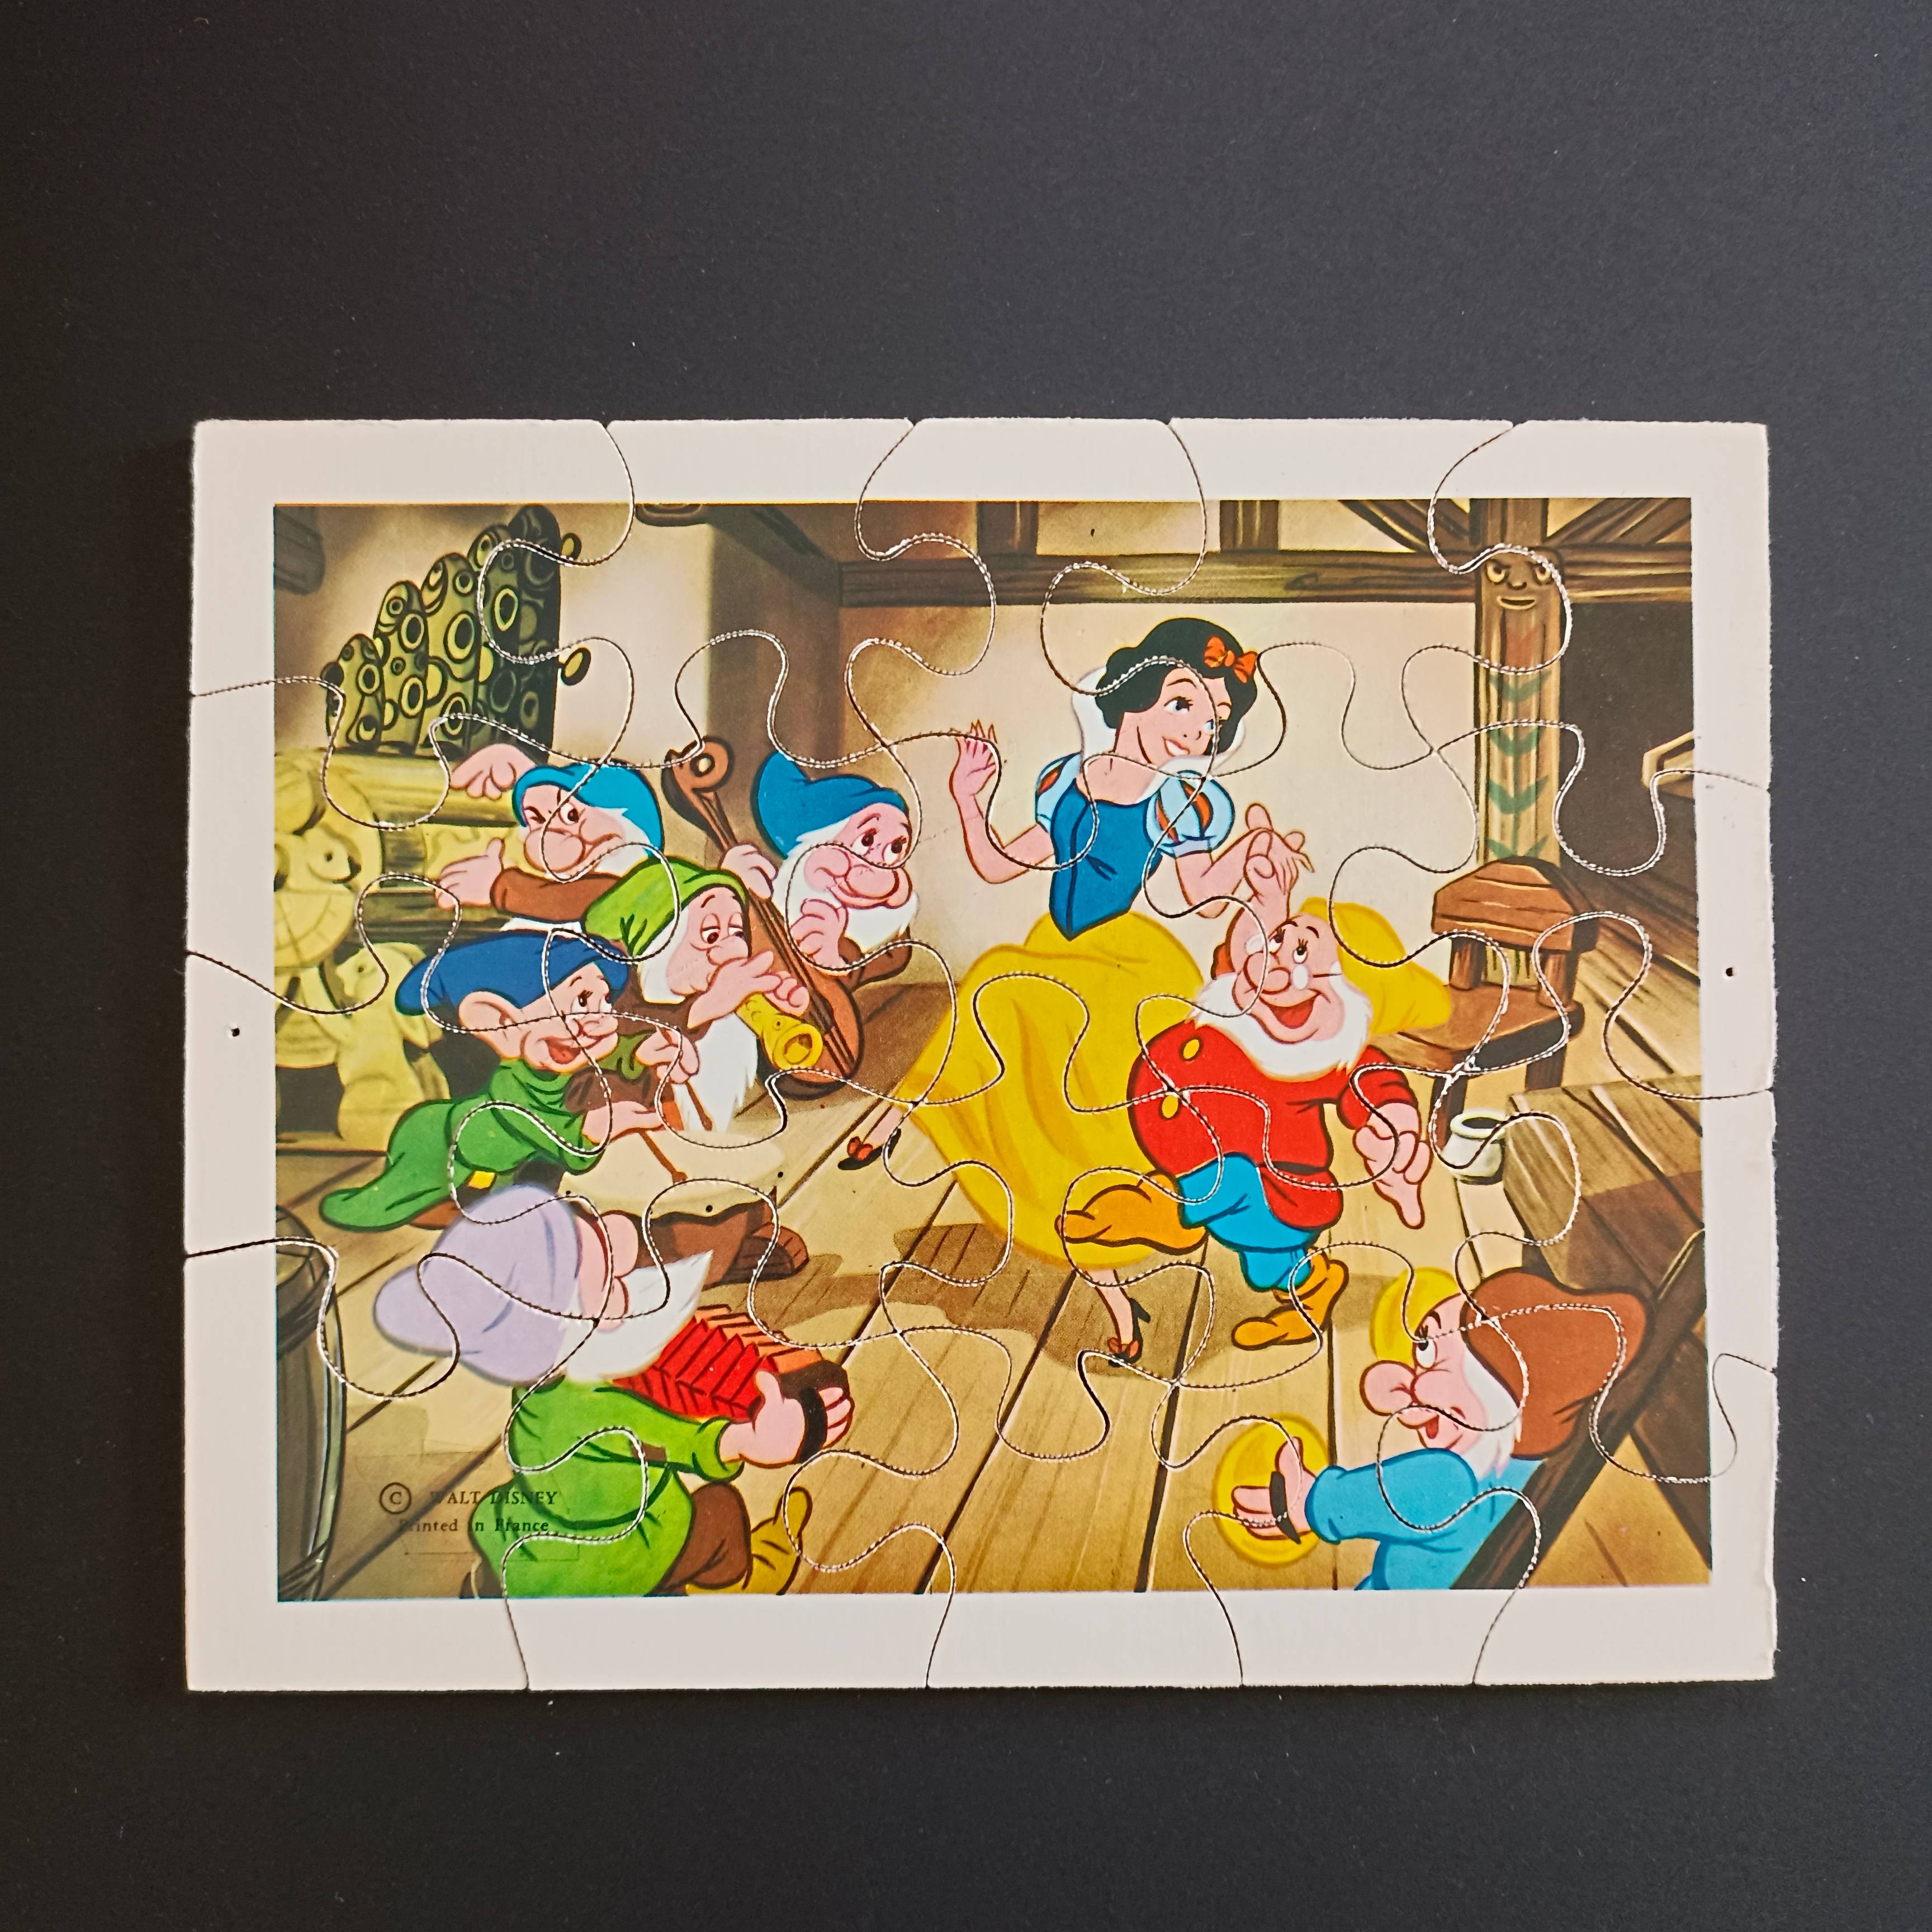 Puzzle en bois ancien, Blanche neige et les sept nains, Walt